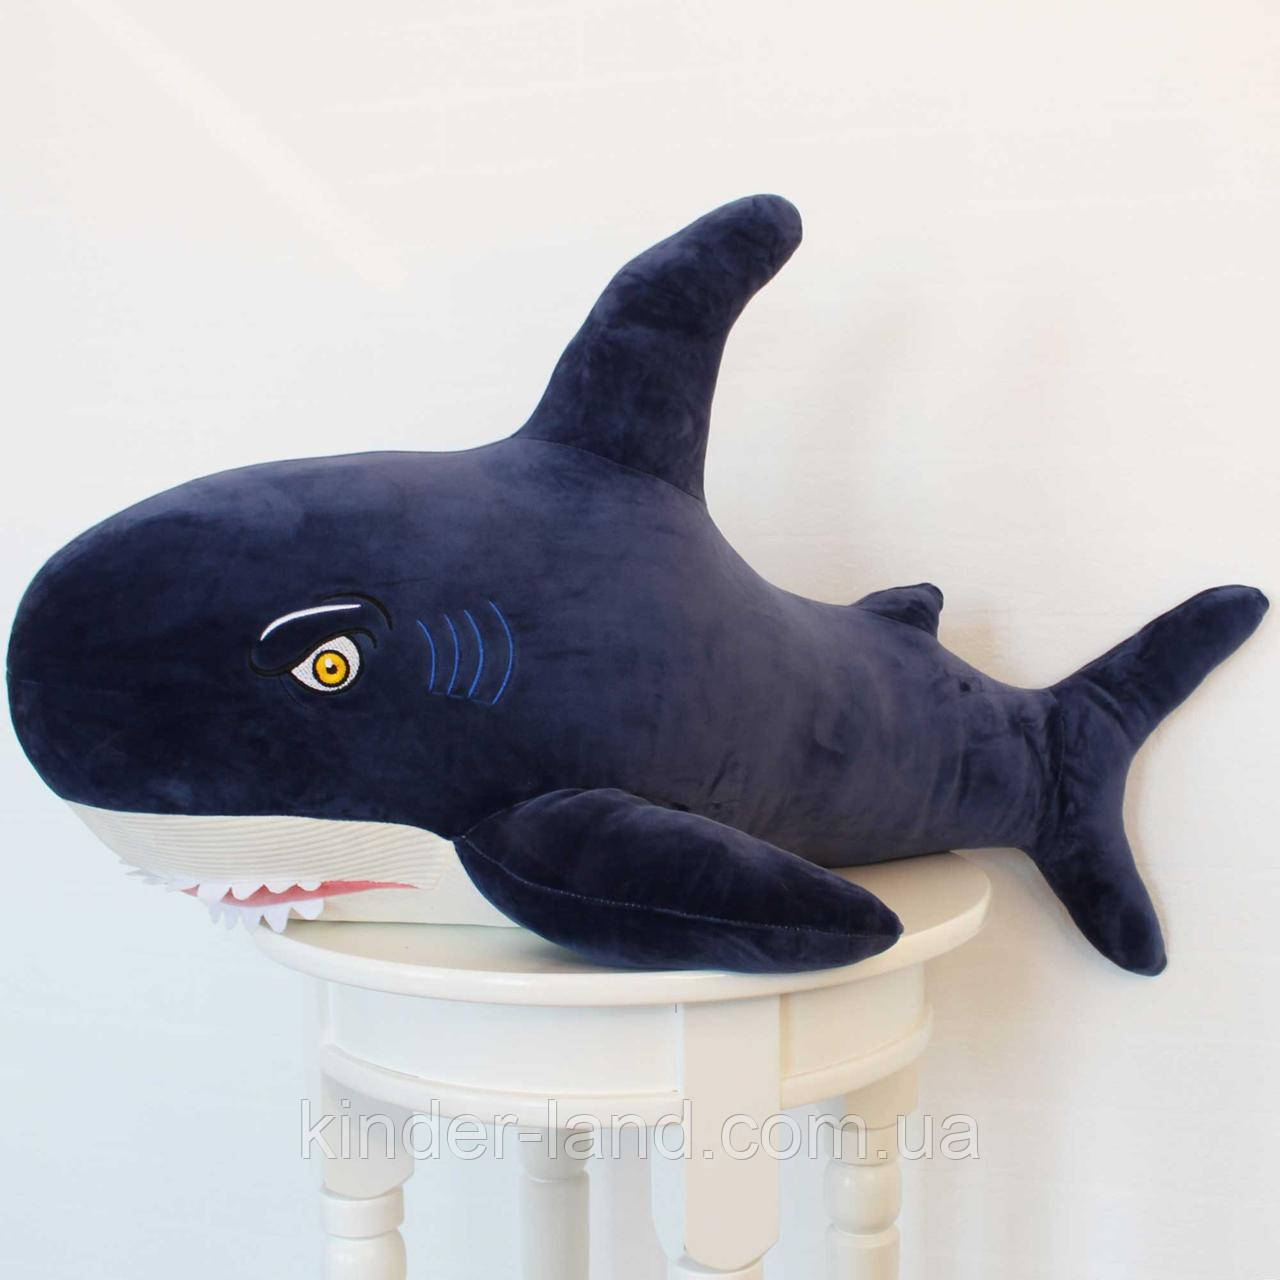 М’яка іграшка акула Немо, 100 см.